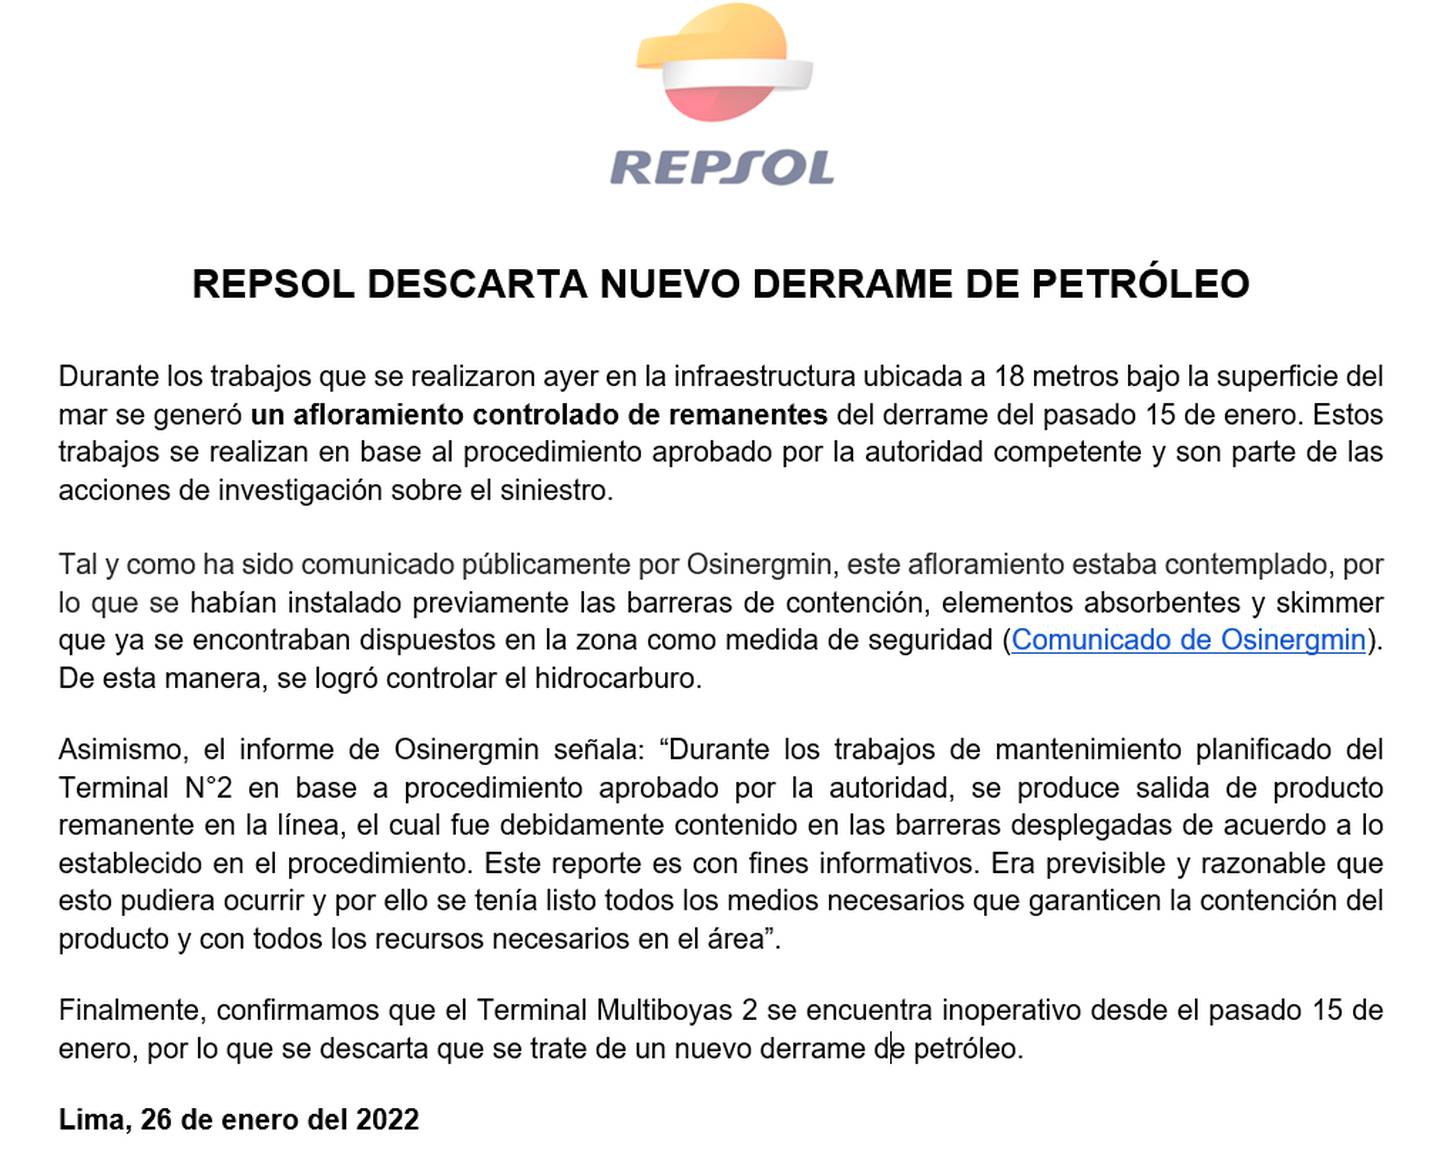 Repsol dice que no se ha dado un nuevo derrame de petróleo en la costa peruana.dfd